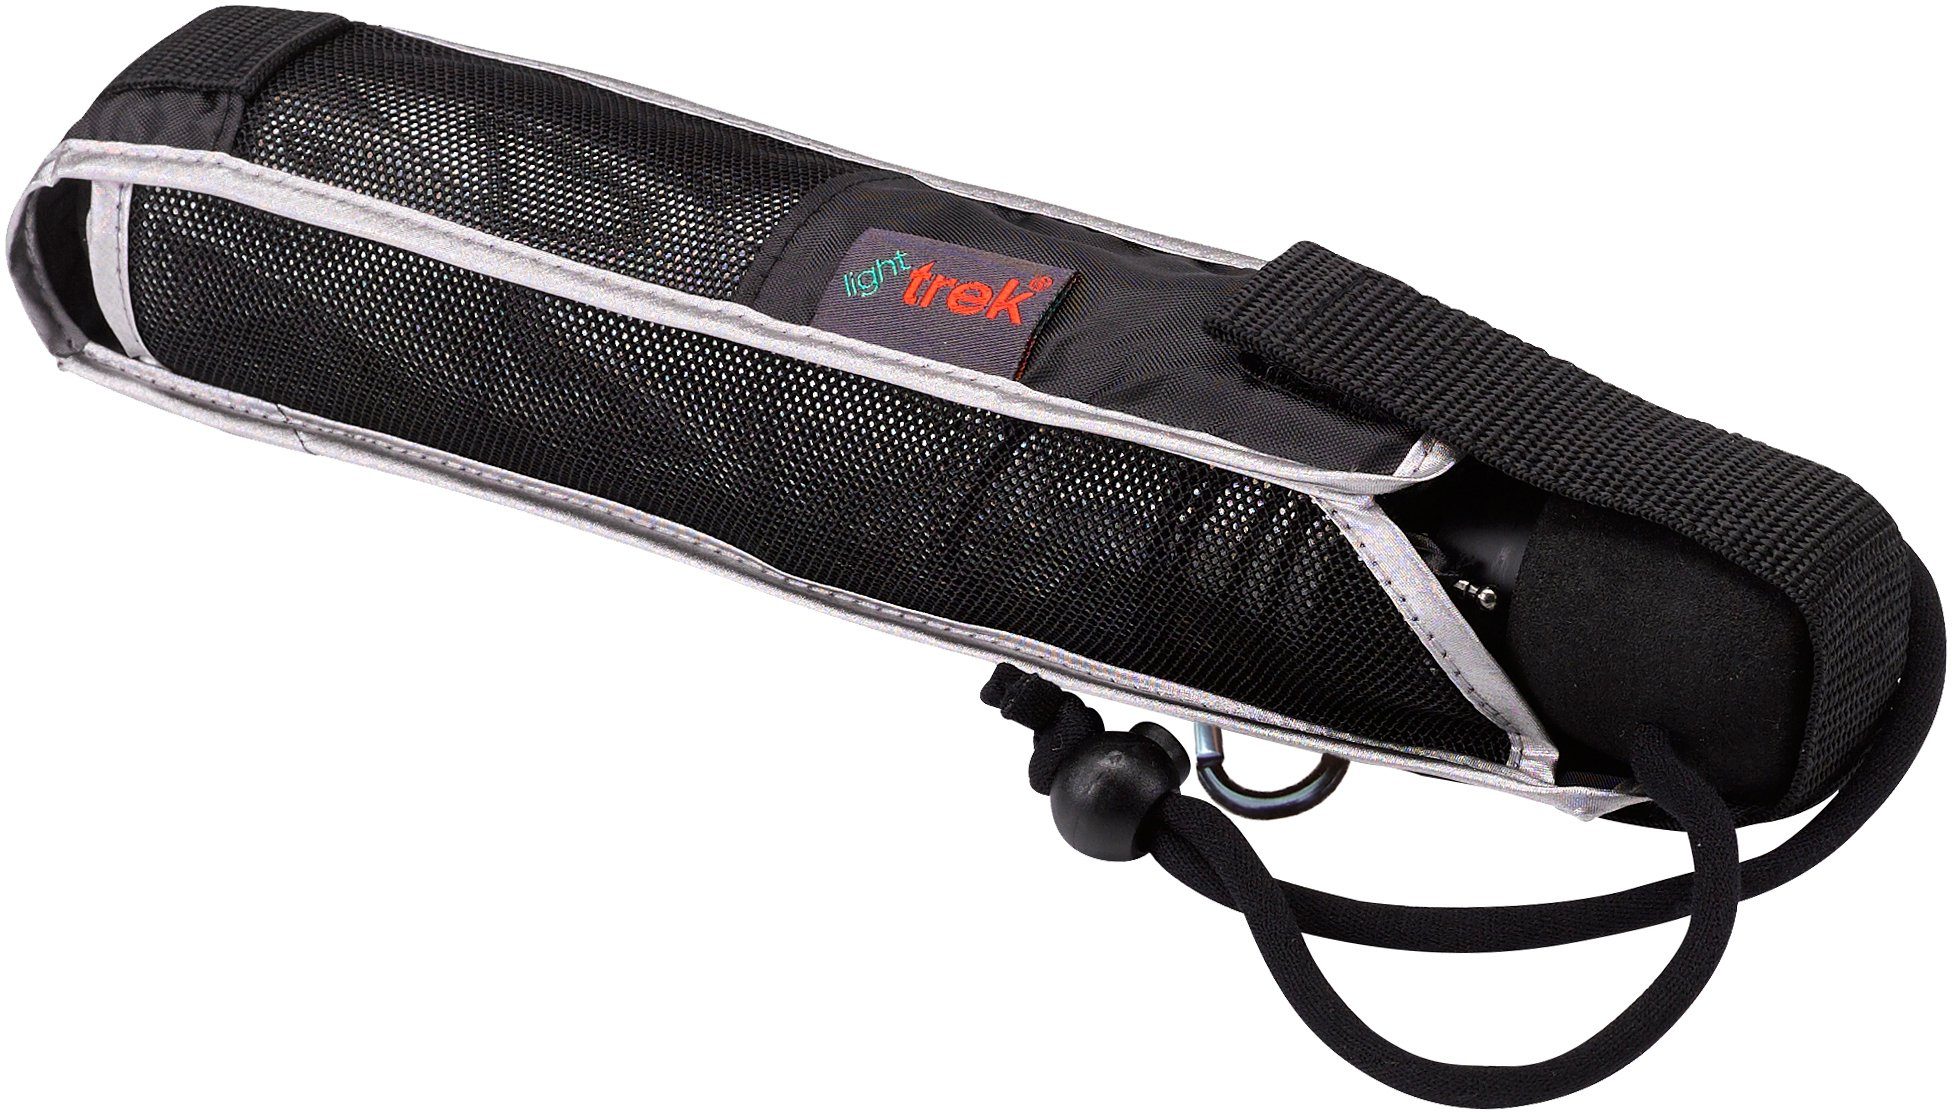 Taschenregenschirm und trek, integriertem Kompass mit silber, light 50+ UV-Lichtschutzfaktor EuroSCHIRM®